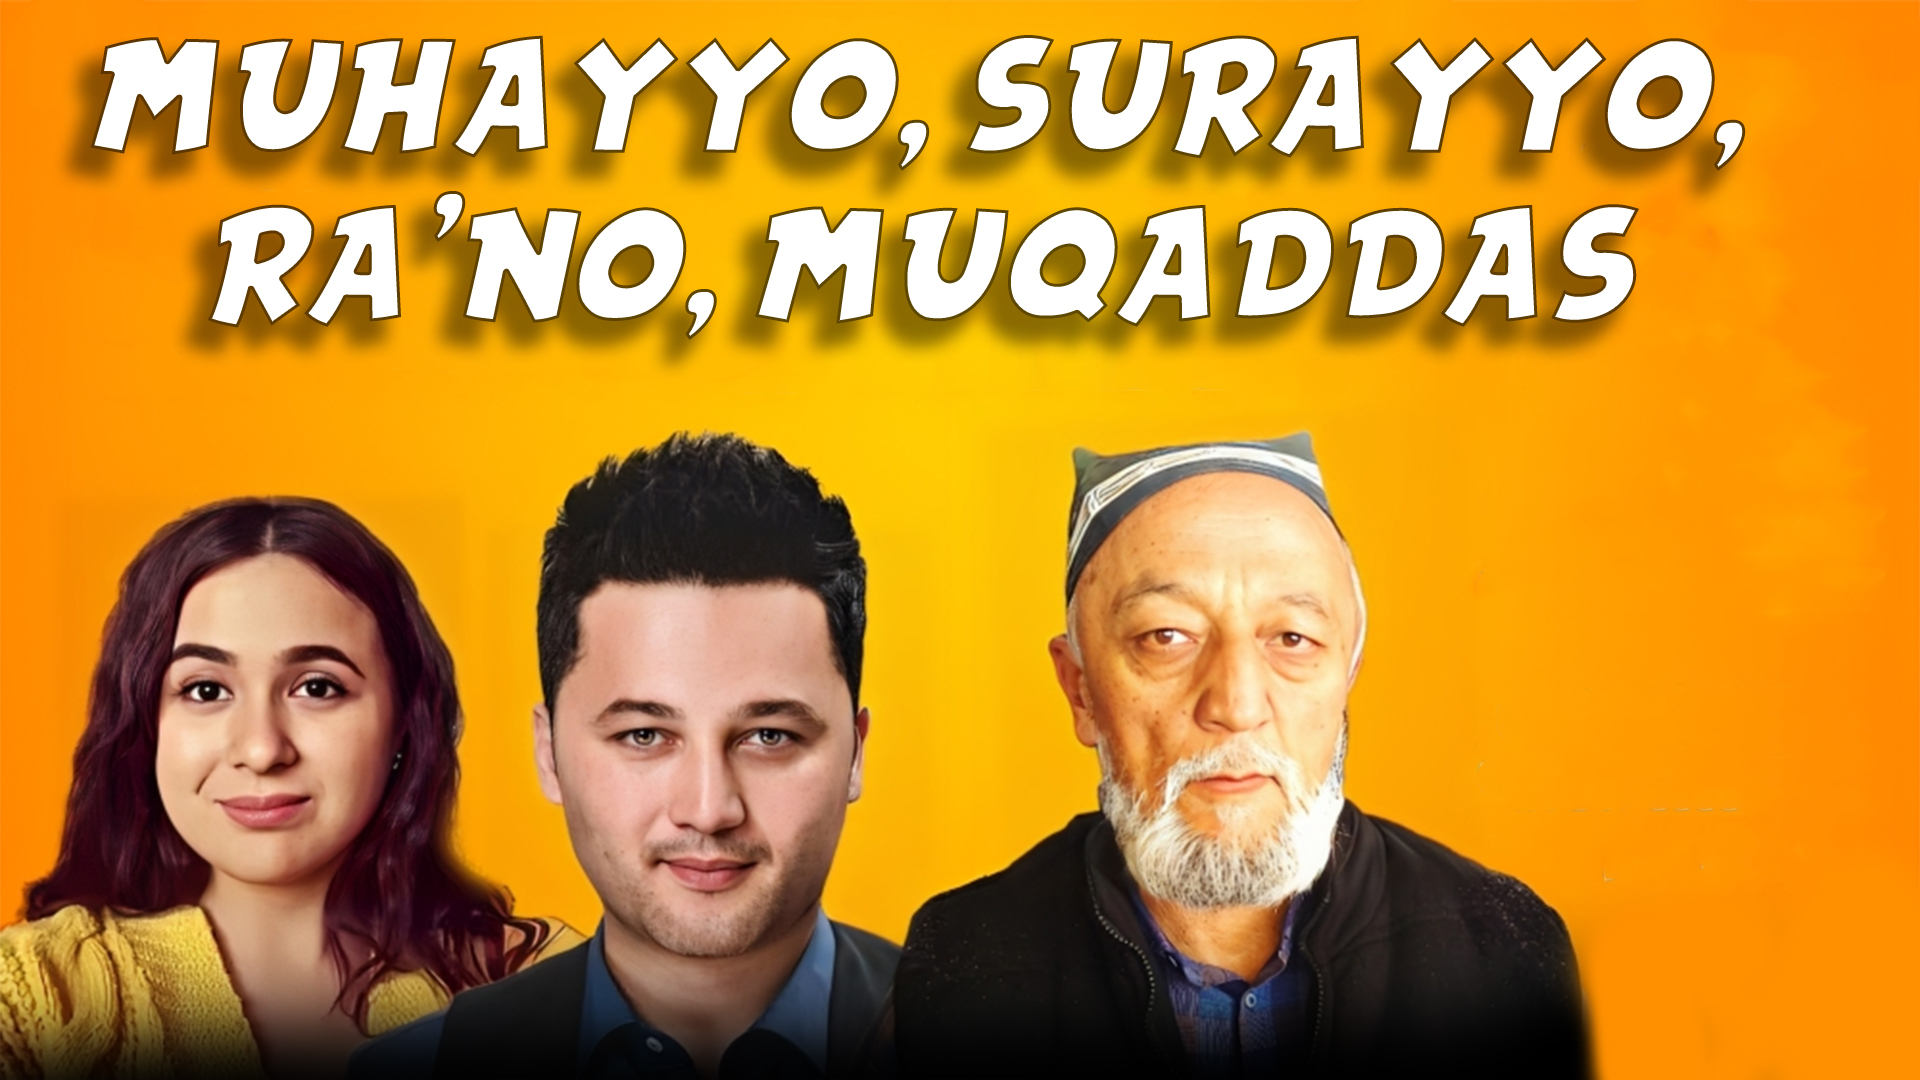 Muhayyo, Surayo, Ra'no, Muqaddas